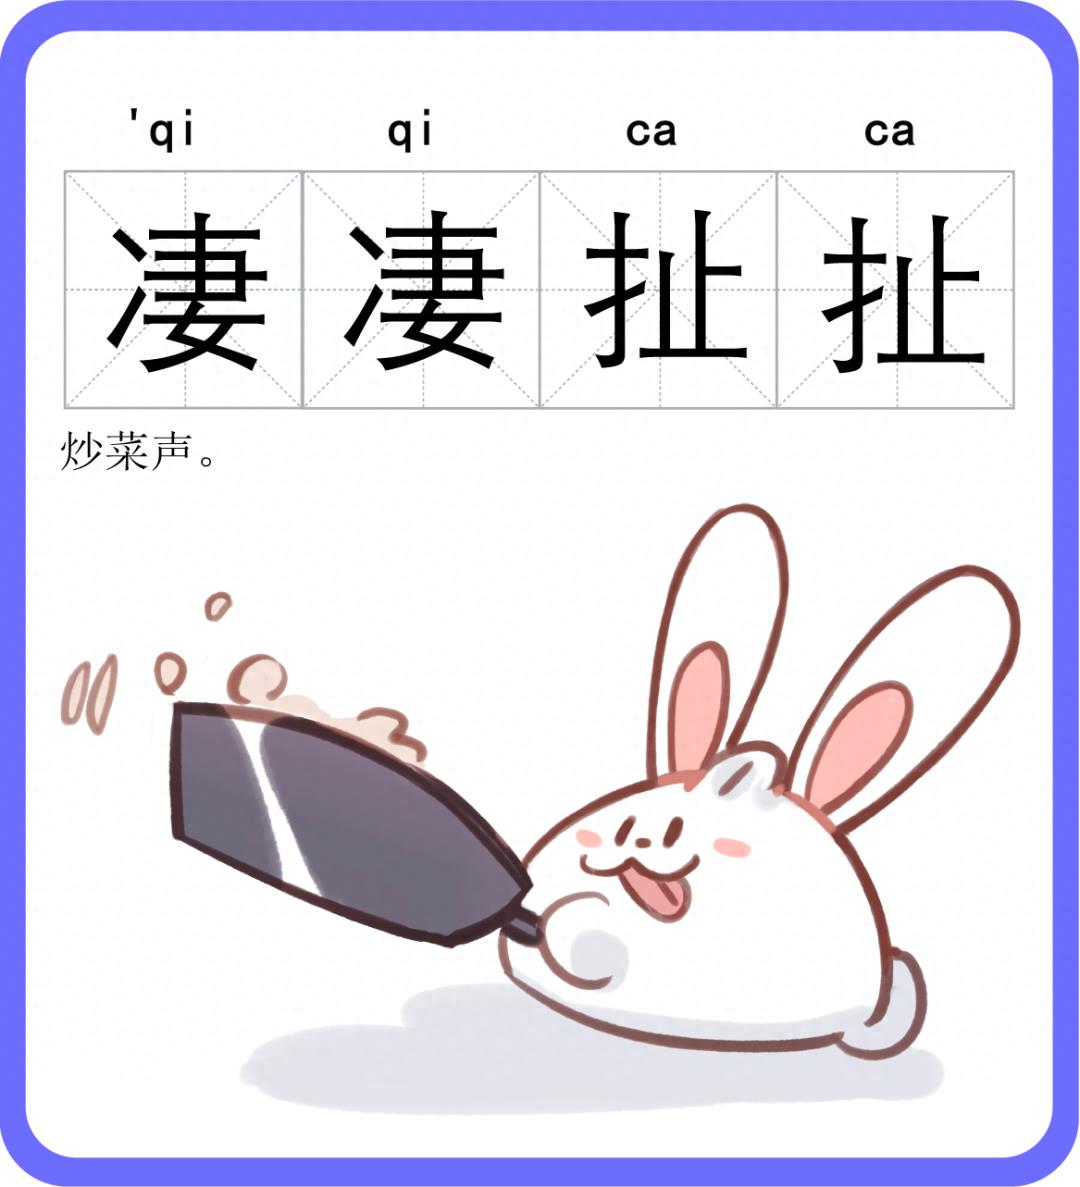 “劈力拍腊”“叽哩咕噜”“淅力索落”……上海话中这些生动的象声词，你都知道吗？